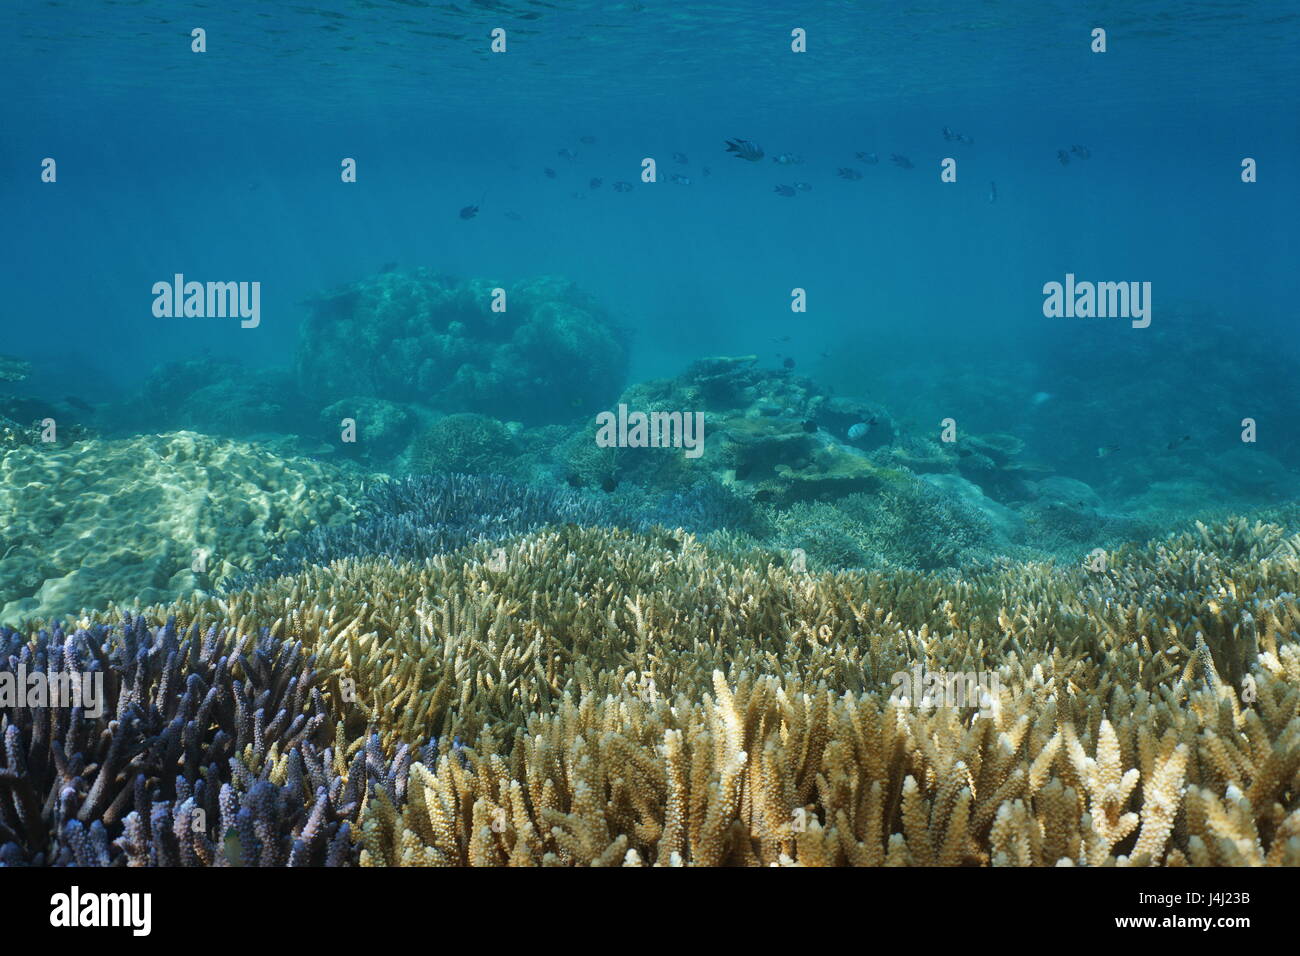 Underwater Coral reef in sana condizione, oceano pacifico del sud, Nuova Caledonia Foto Stock